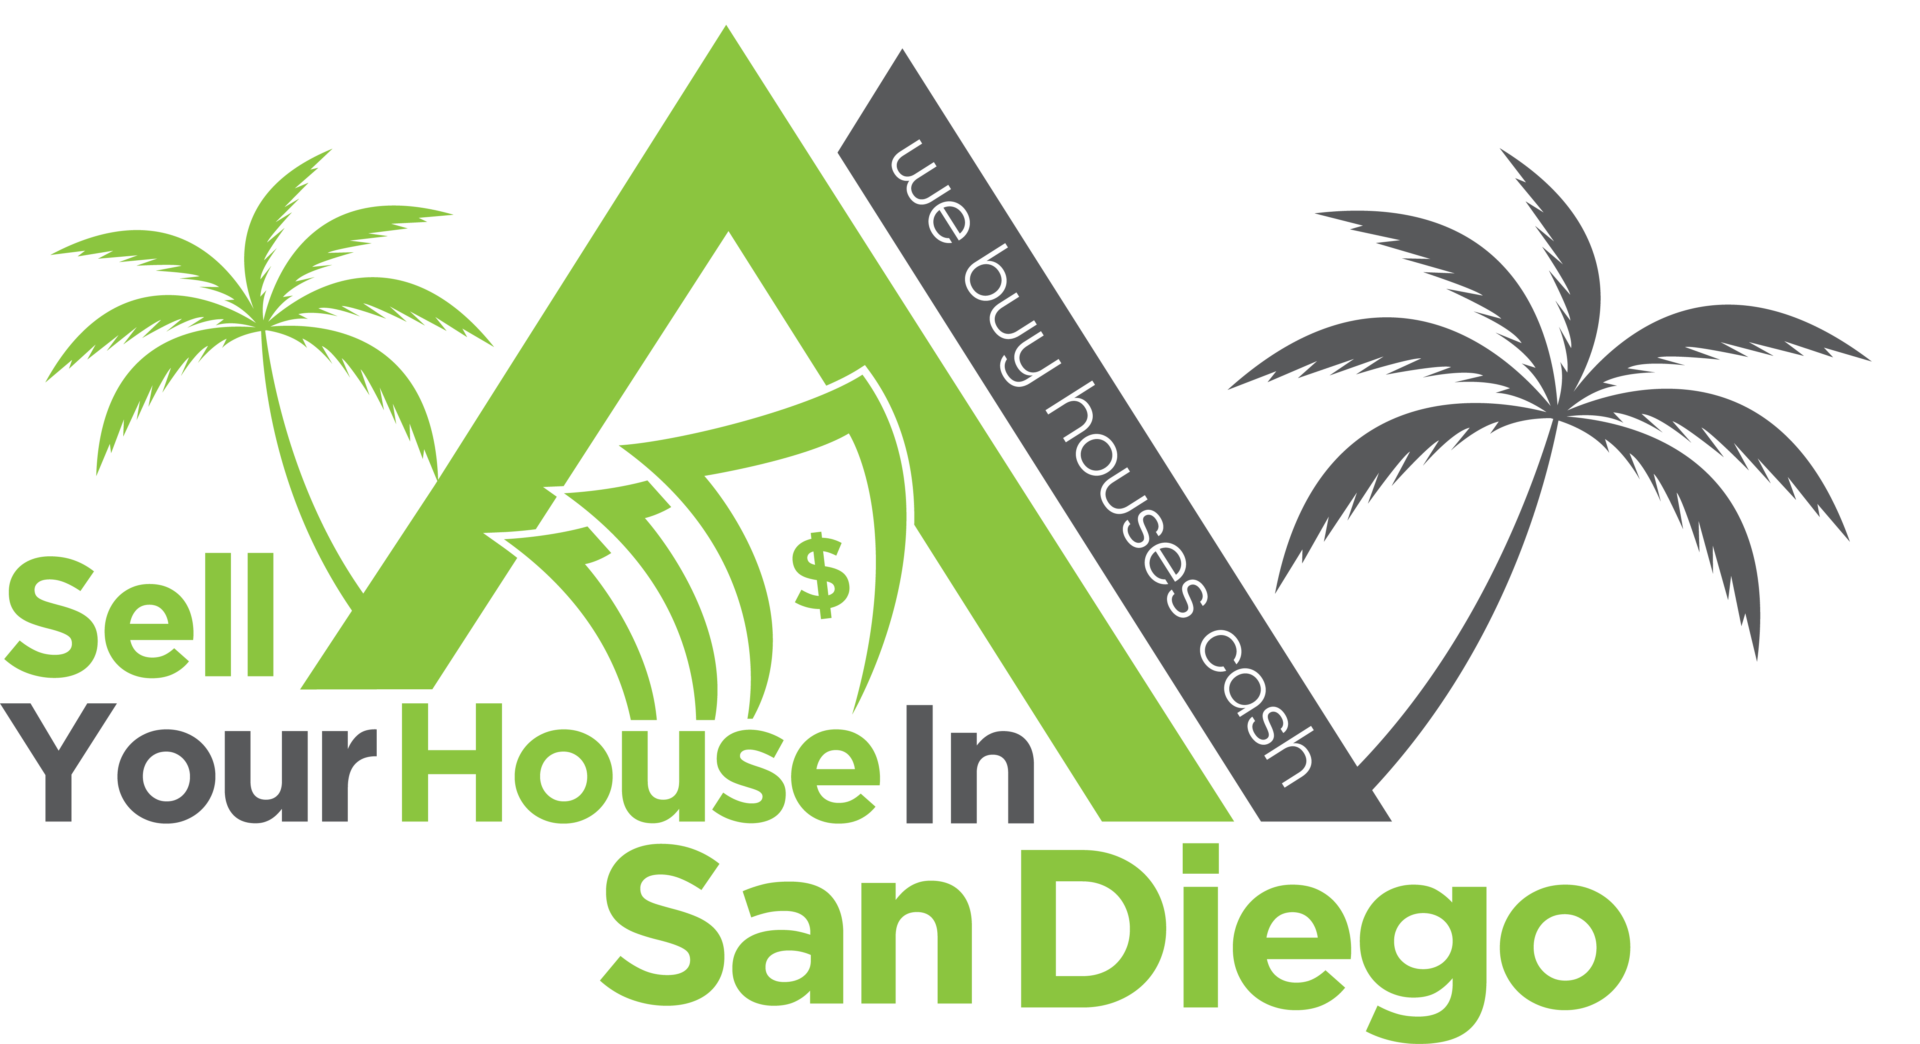 We Buy Houses In San Diego logo